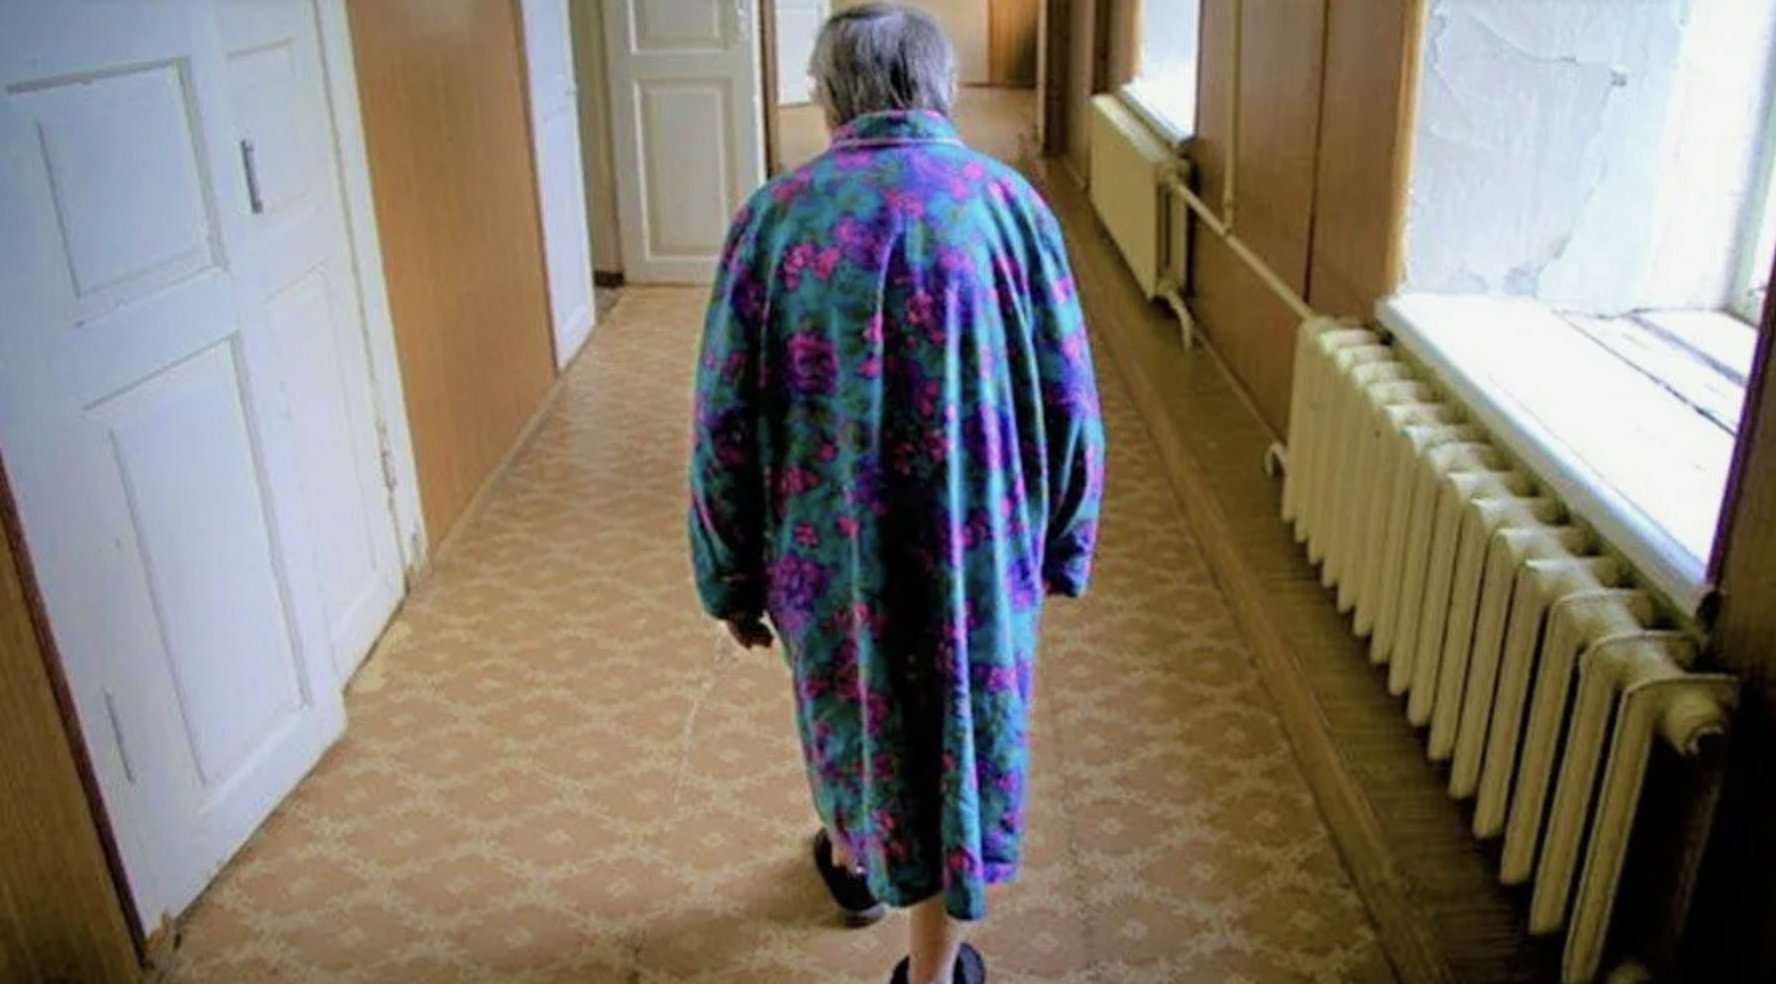 La abuela camina por el pasillo | Fuente: Shutterstock